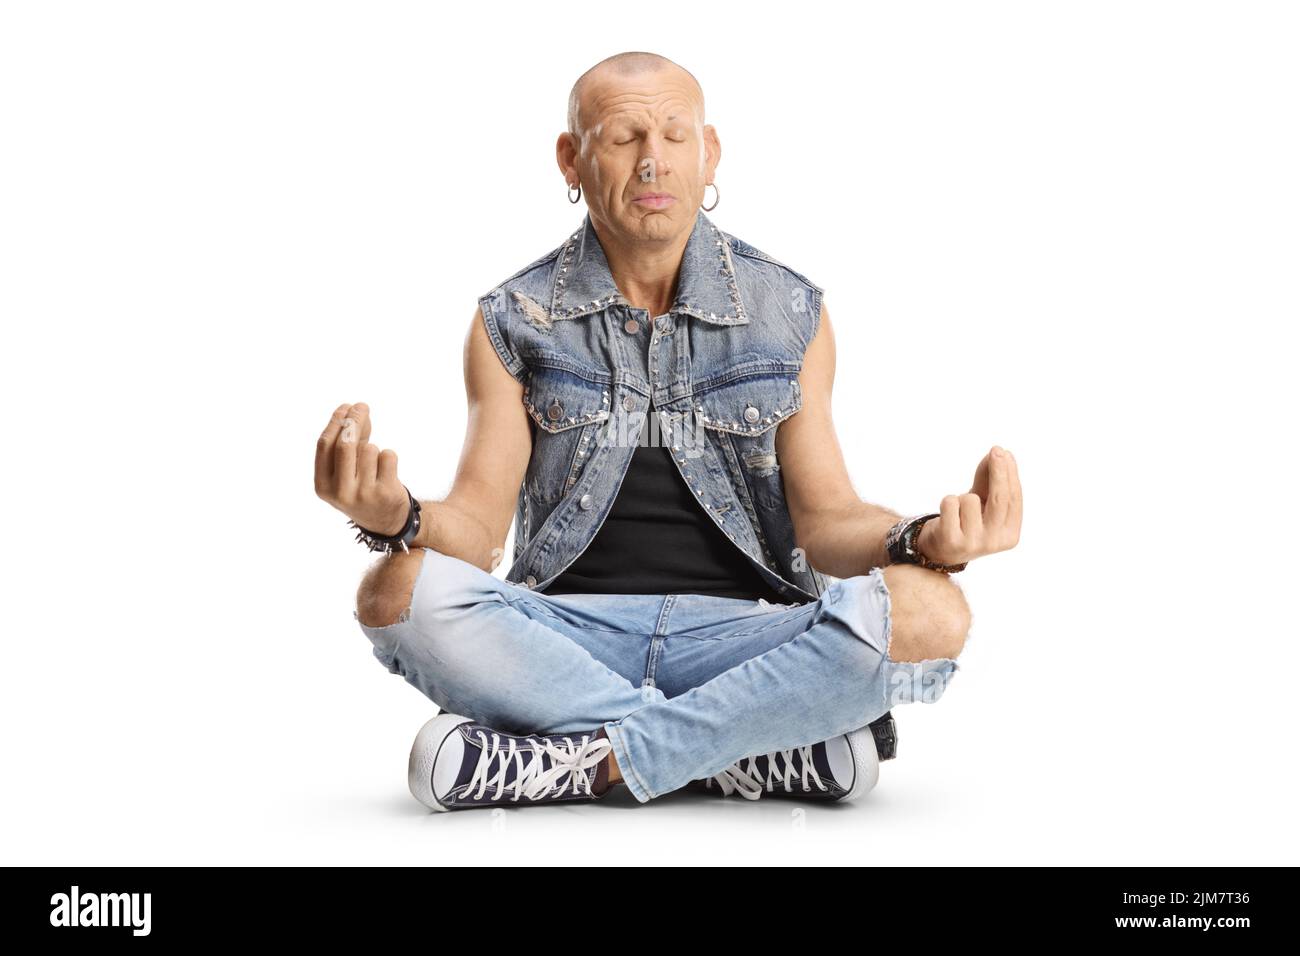 Hombre calvo sentado con las piernas arqueadas y practicando meditación aislada sobre fondo blanco Foto de stock